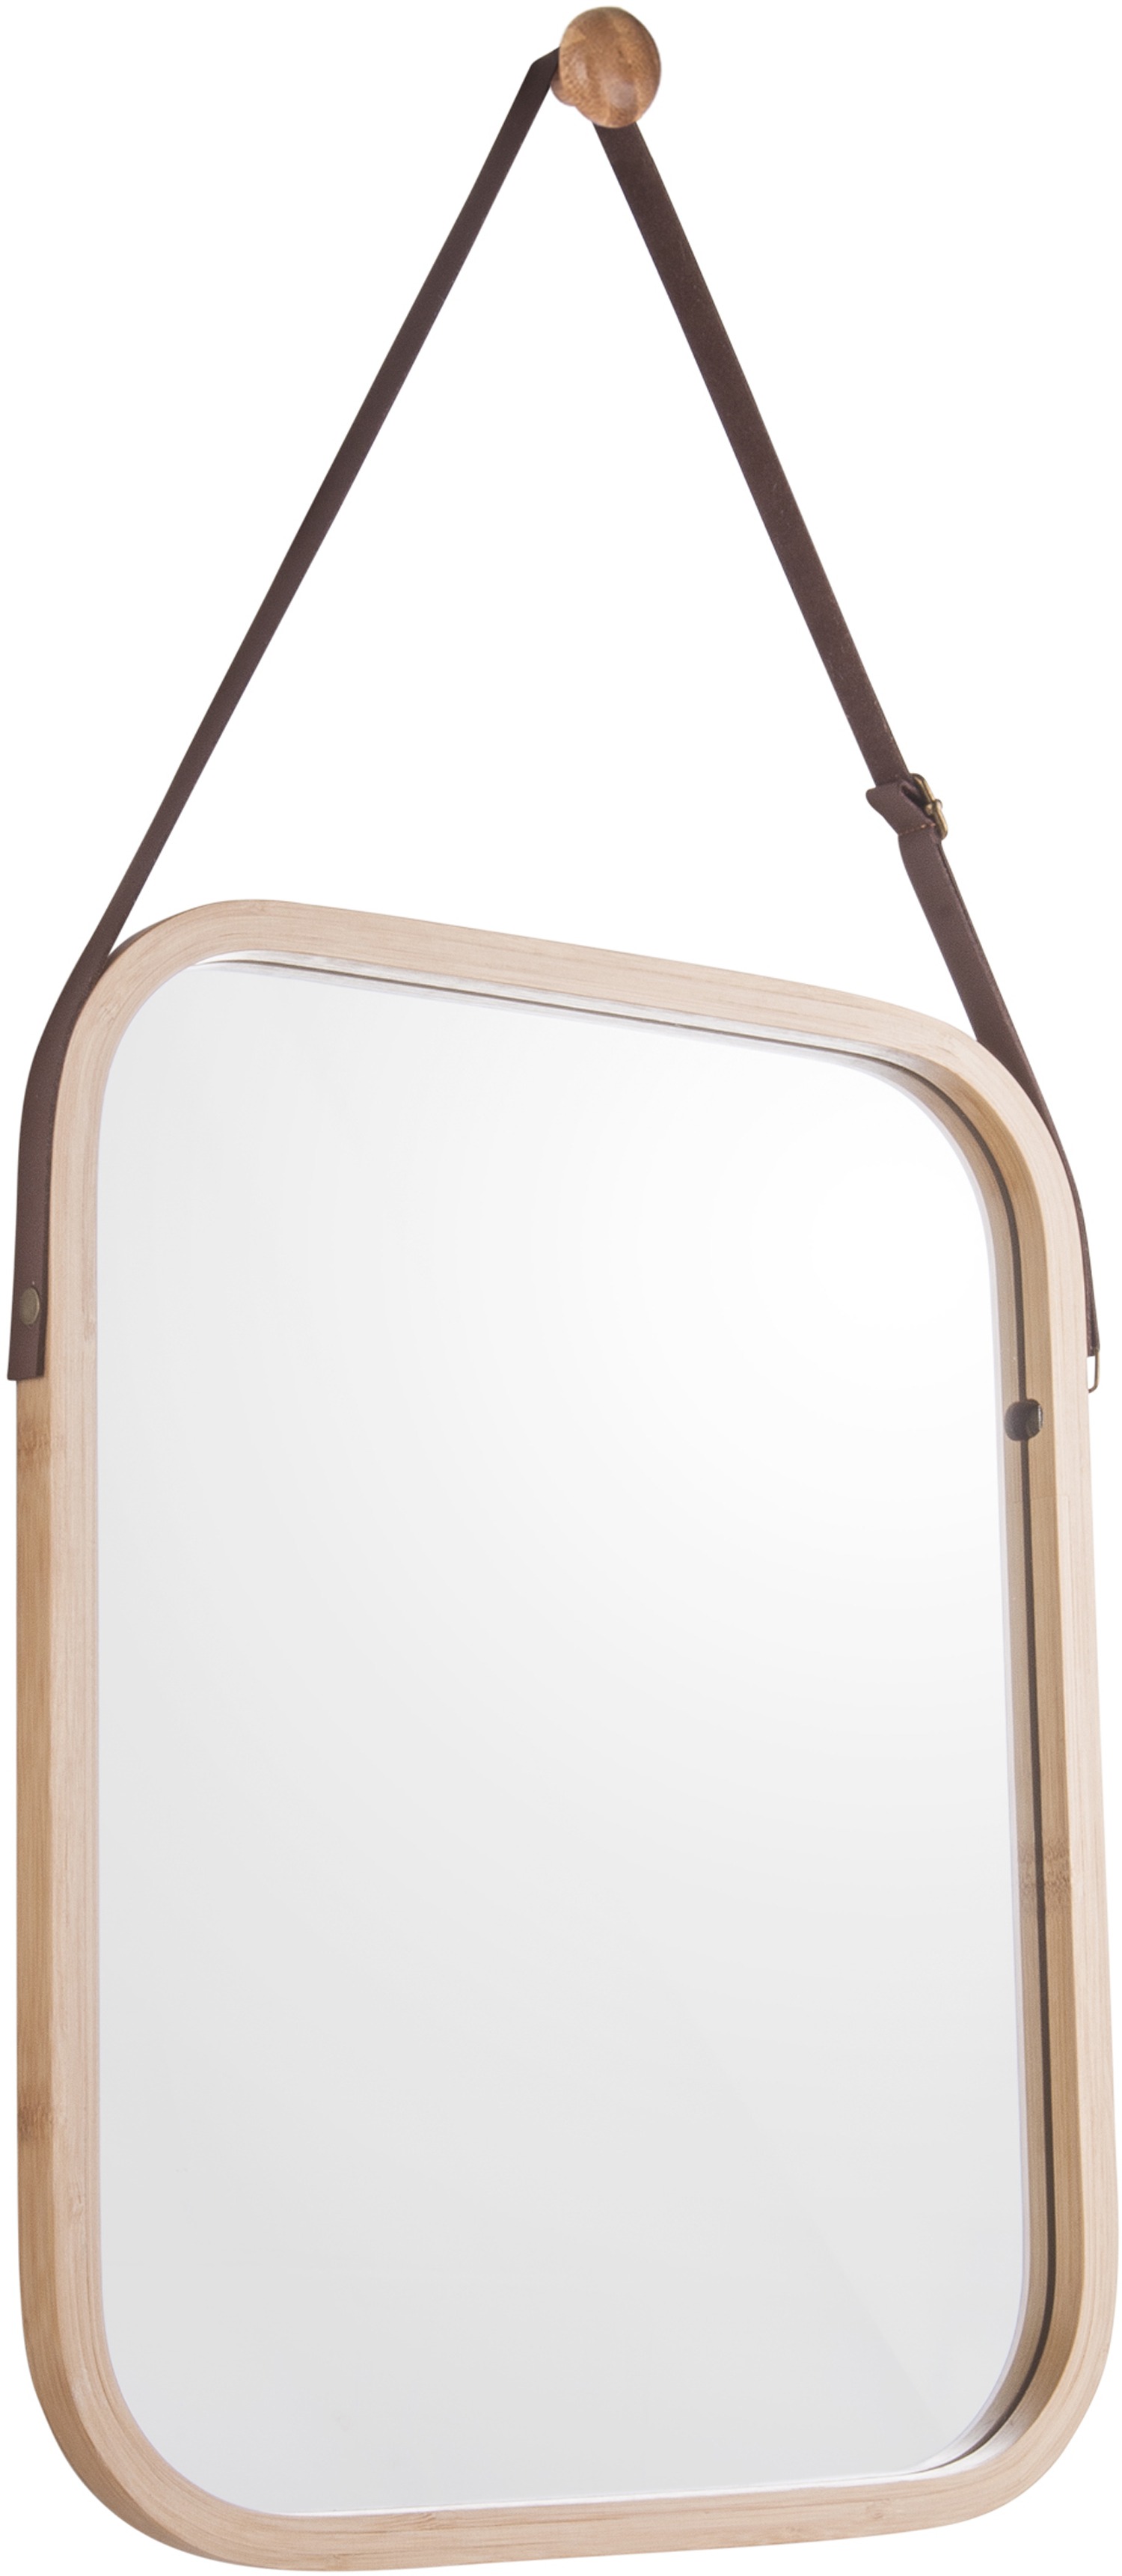 Miroir carré en bambou à suspendre Idyllic